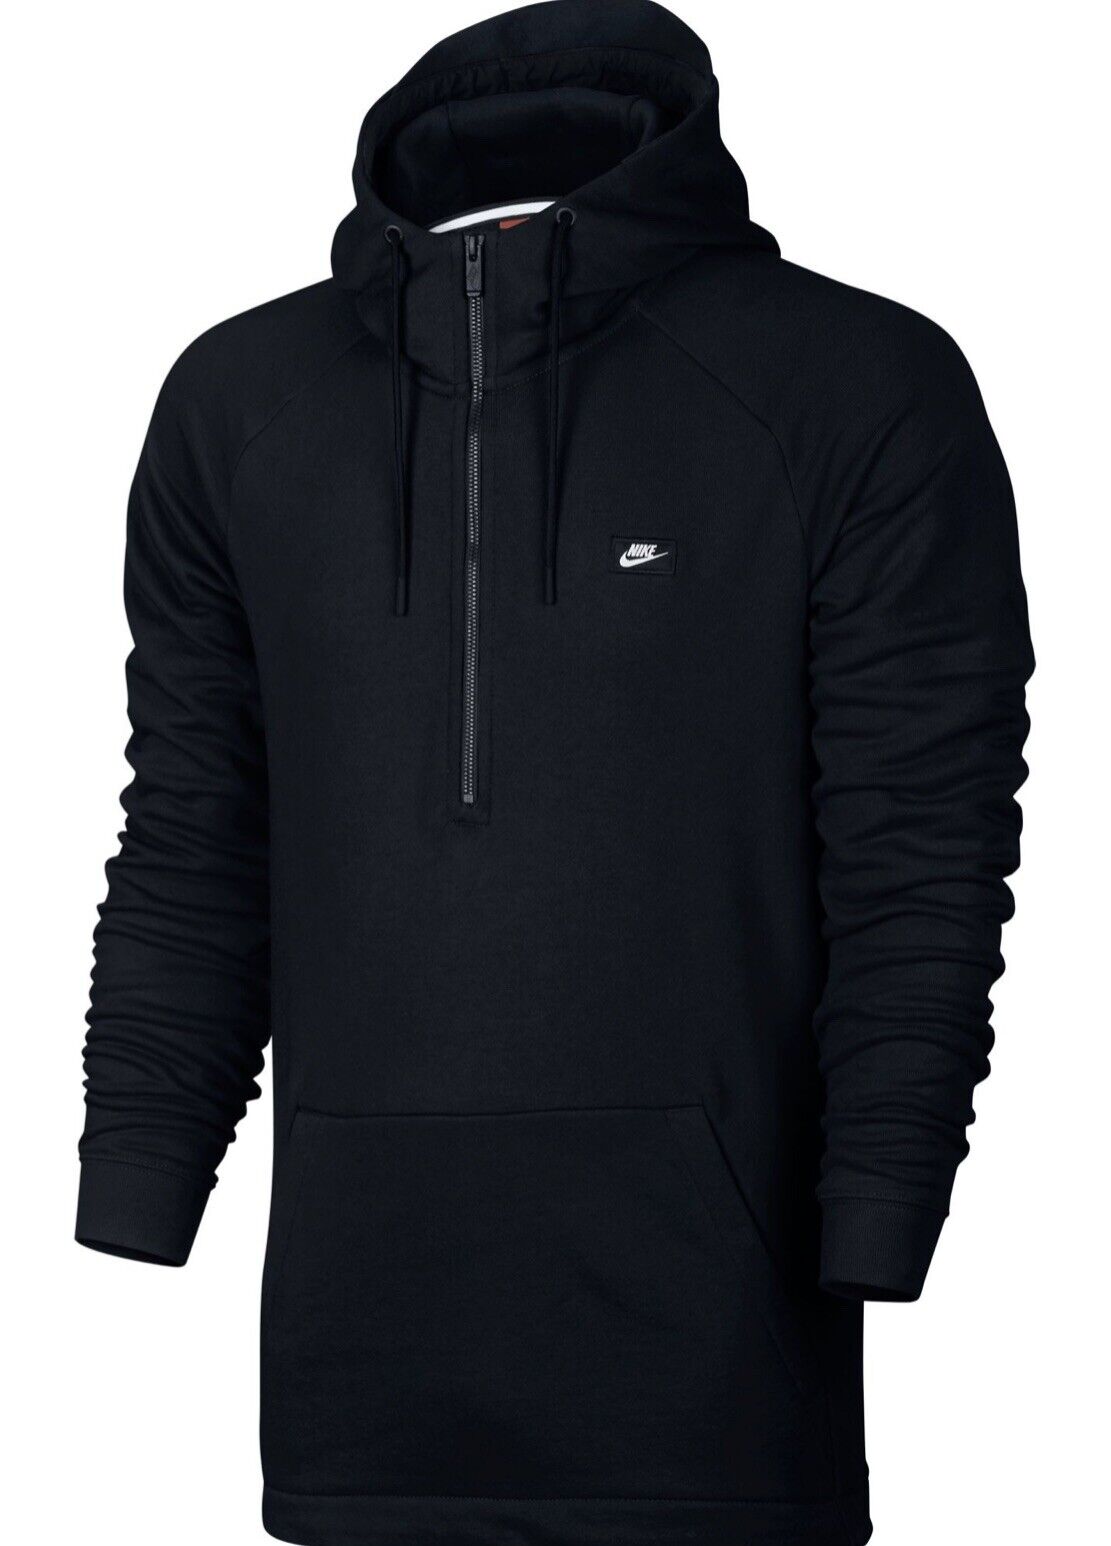 Styrke underholdning Jeg var overrasket Nike Modern Half Zip Hoodie Sweatshirt Pullover Black 805132-010 Mens Size  XL | eBay